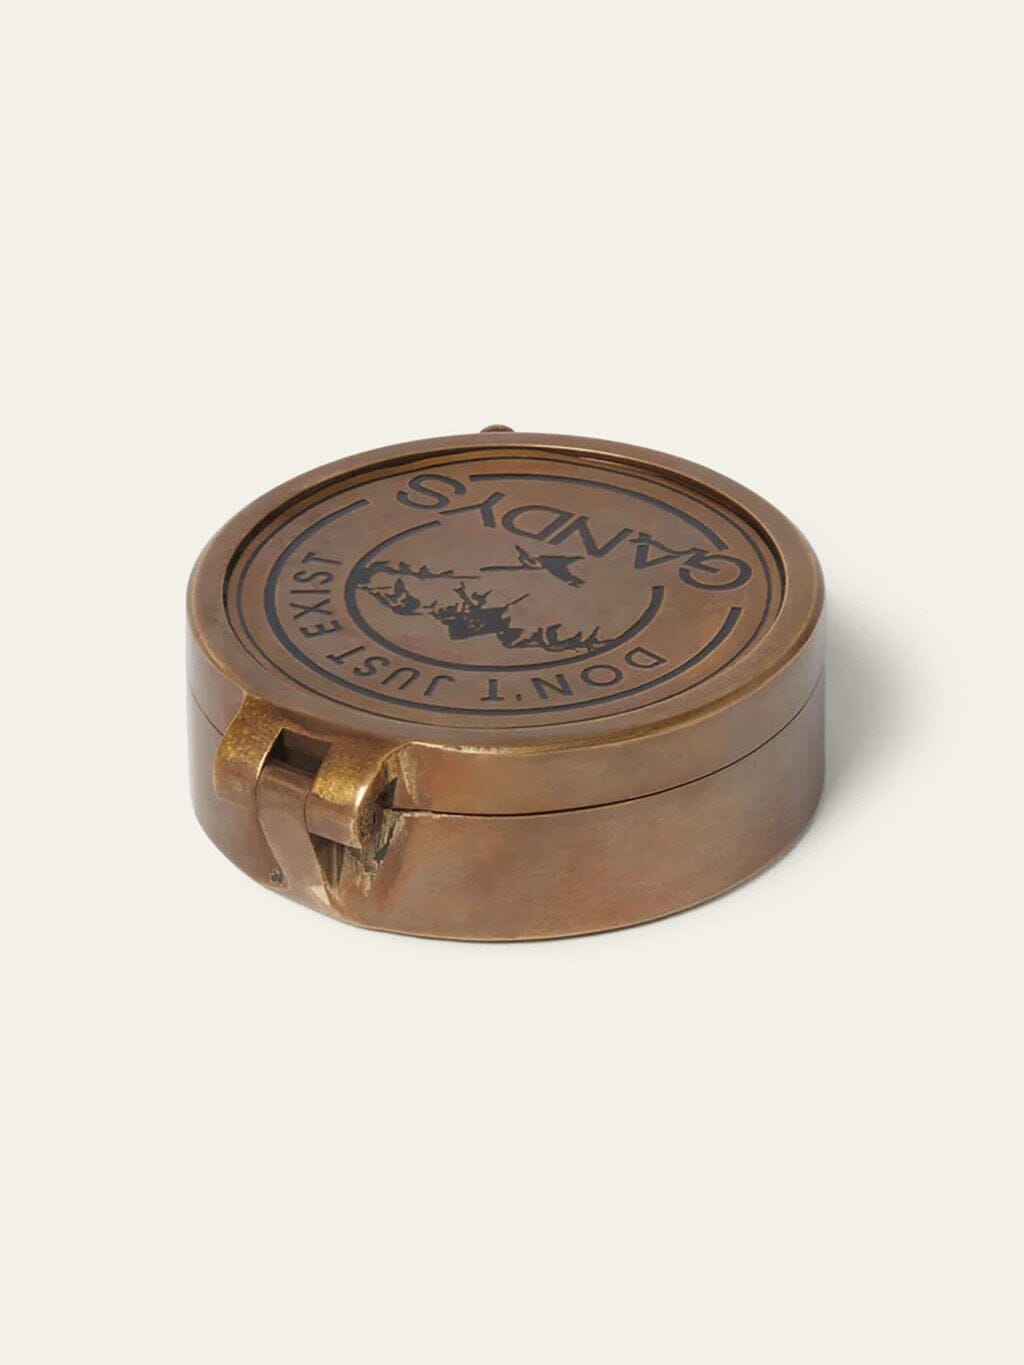 Navigator Antique Brass Compass, Travel Accessories